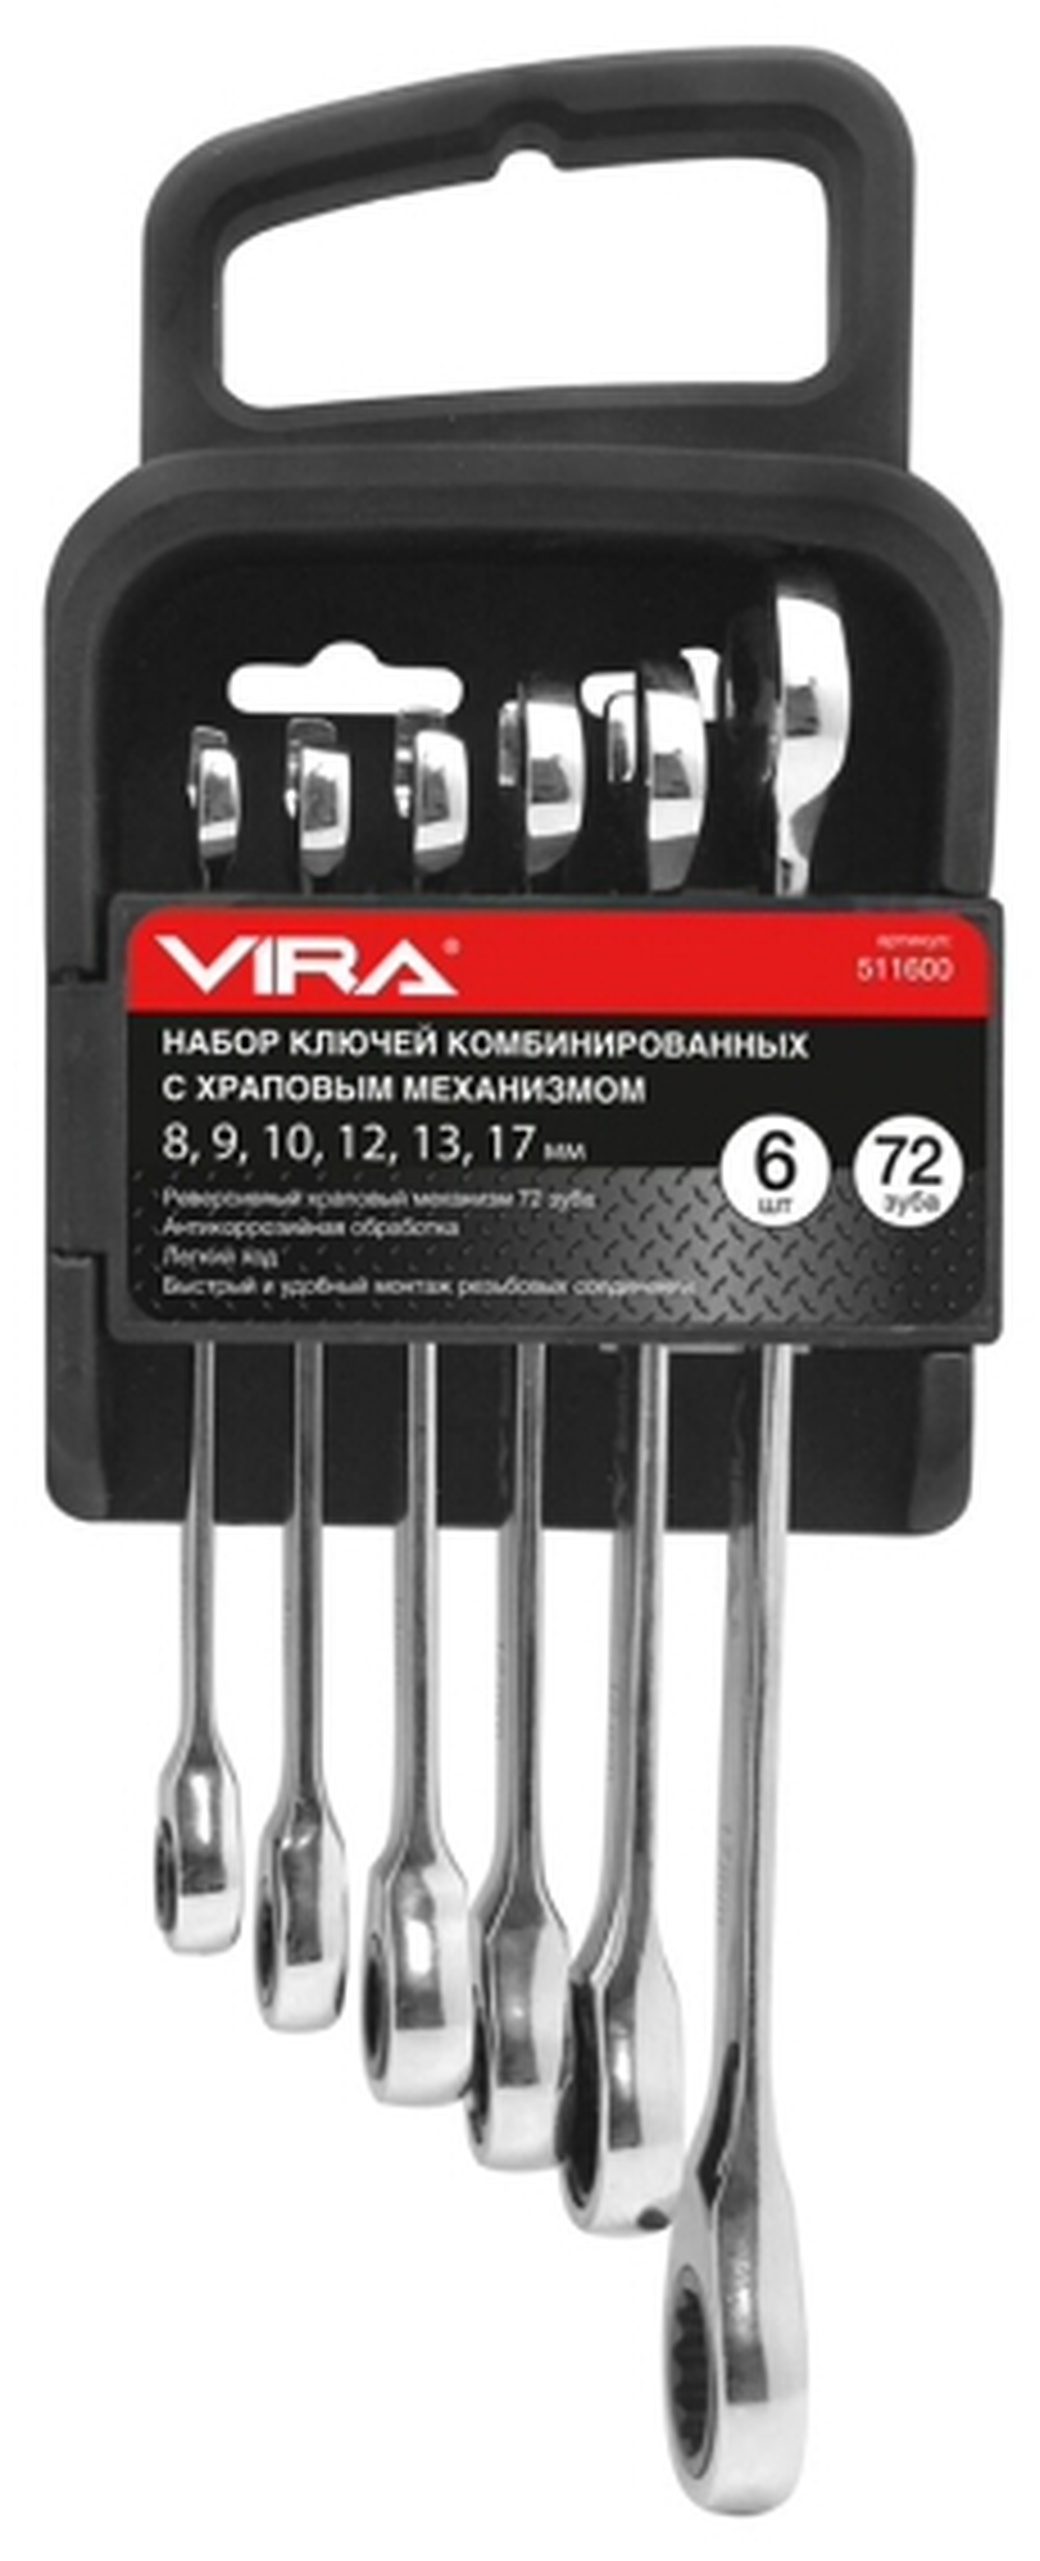 Набор комбинированных ключей Vira 511600 с храповым механизмом 6 шт. фото